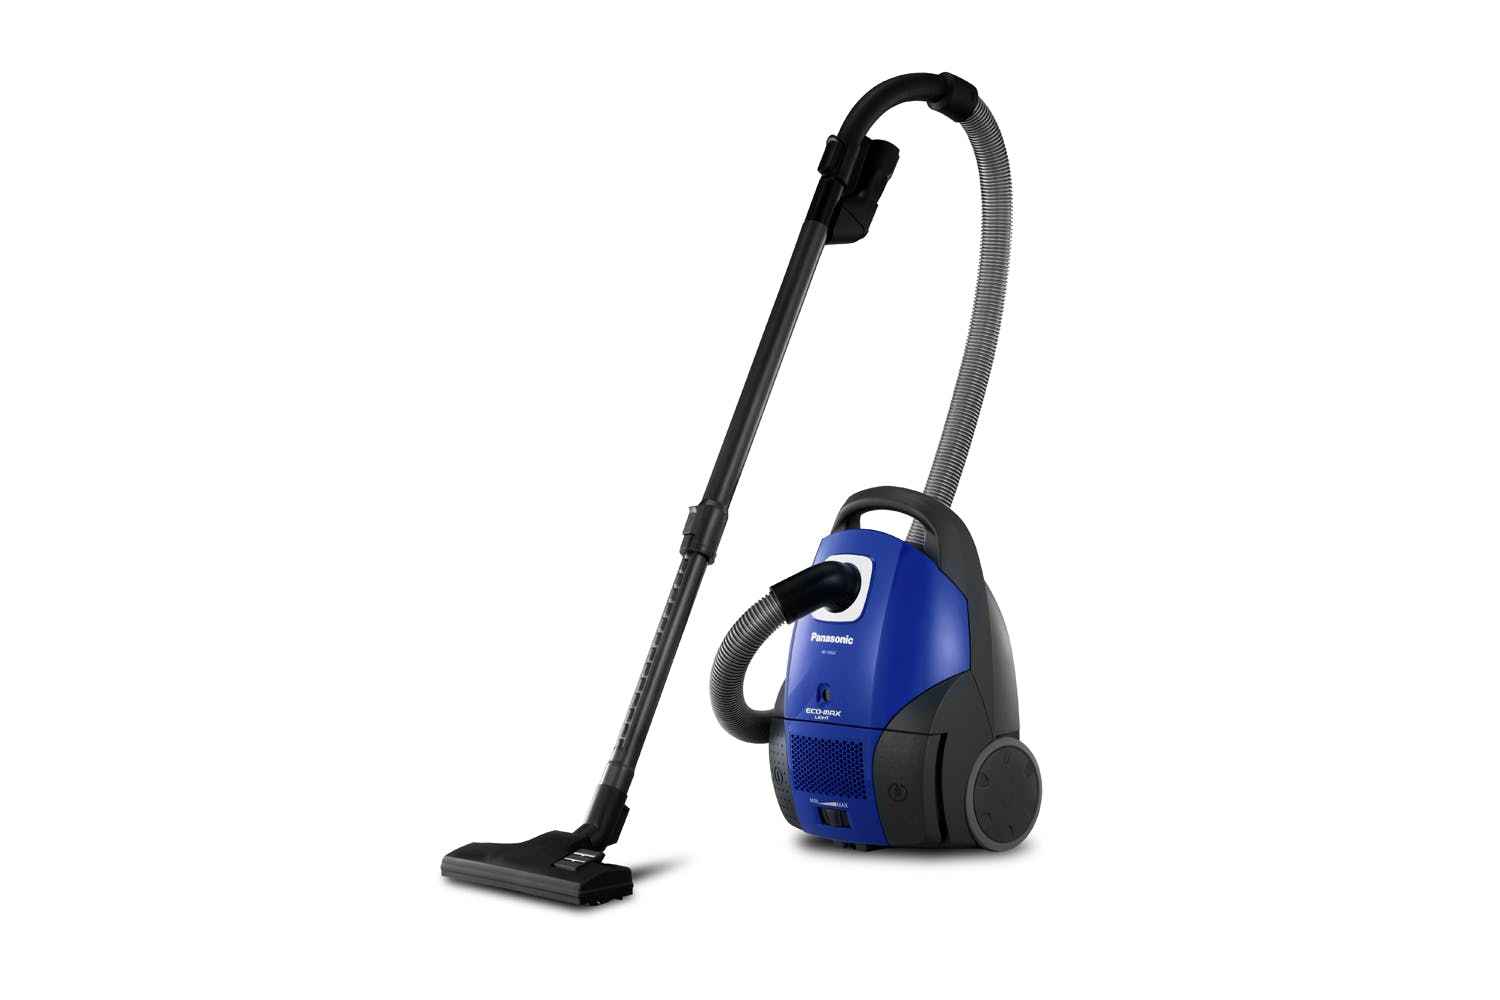 Best vacuum cleaner under $200